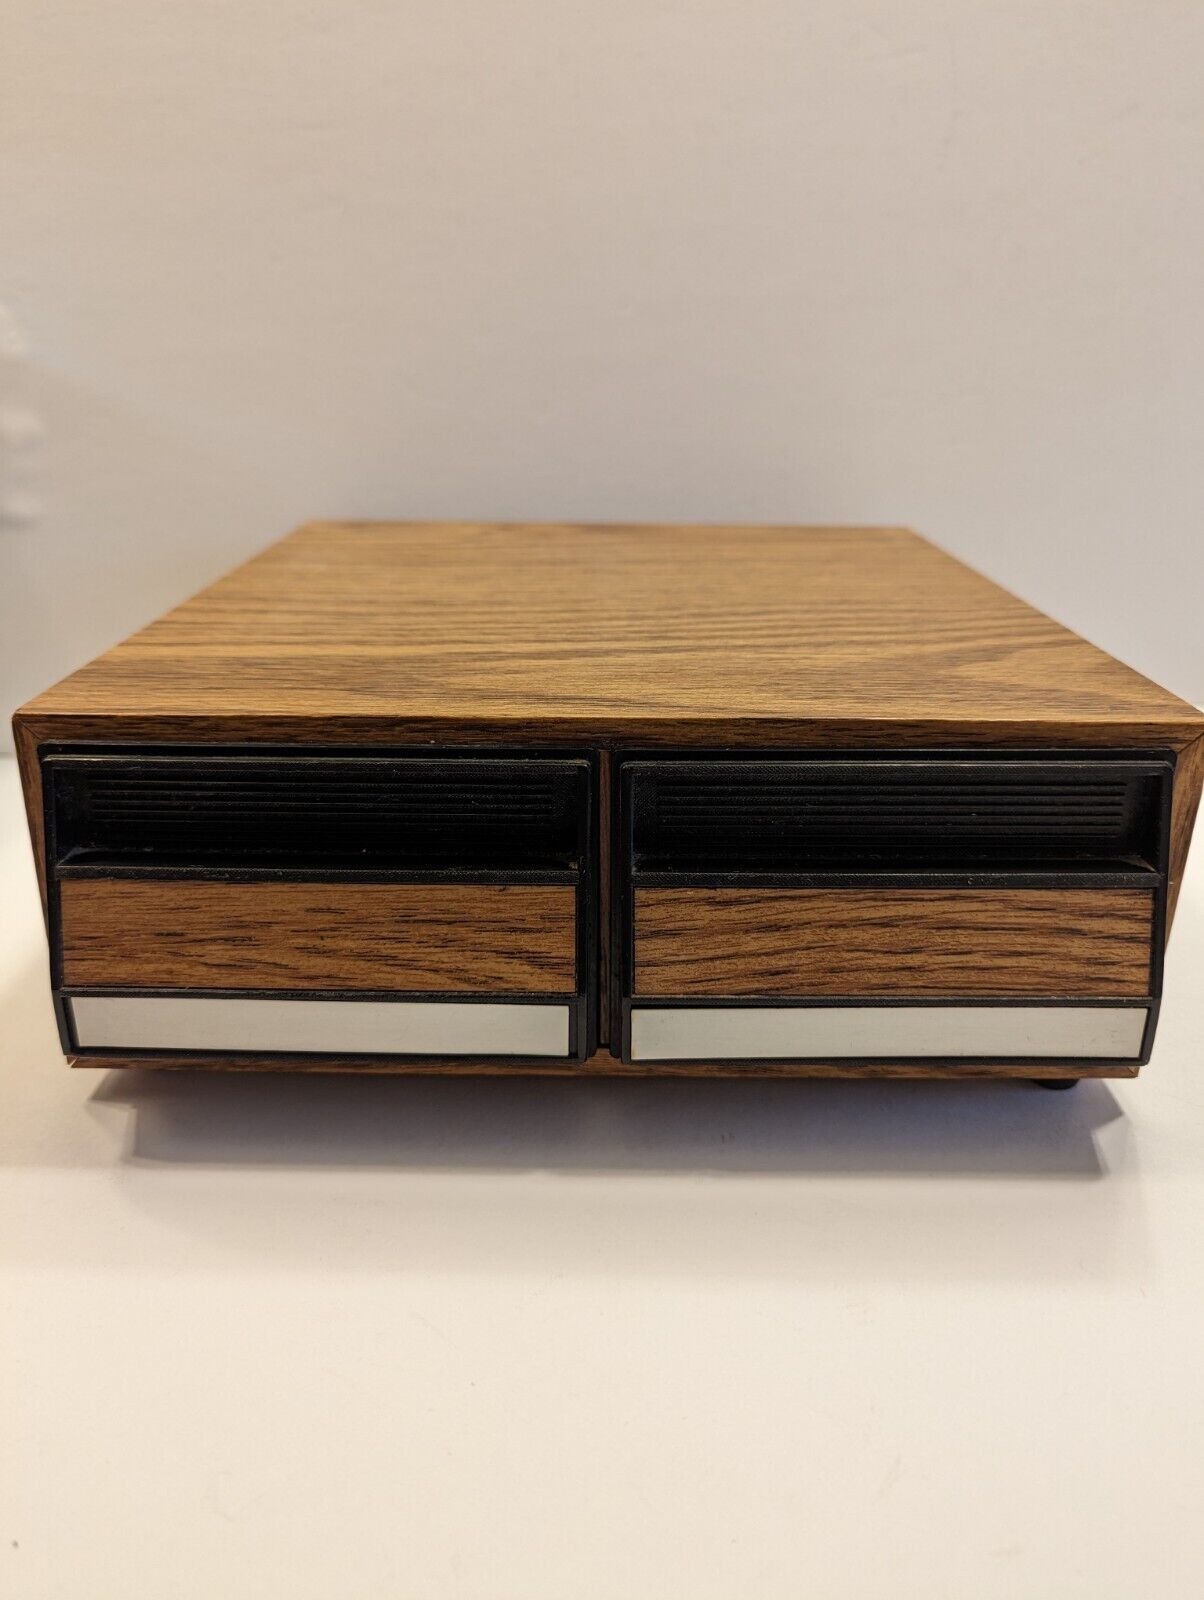 Vintage Faux Wooden 2 Drawer Cassette Tape Holder Storage Cabinet Case Holds 28